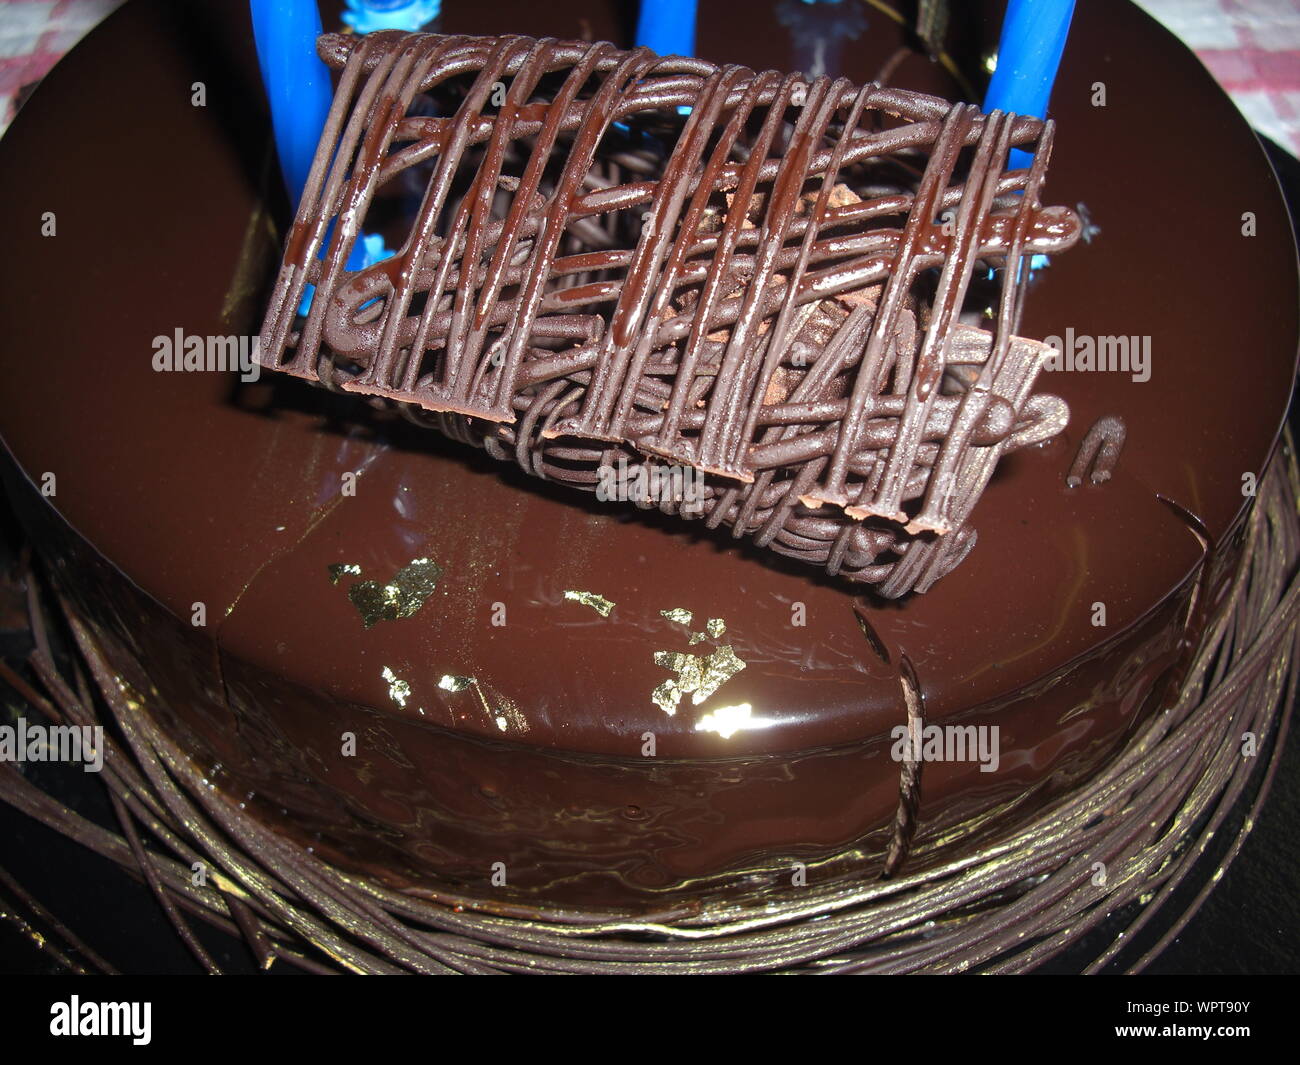 Cioccolato torta di compleanno Savoy Londra Foto Stock